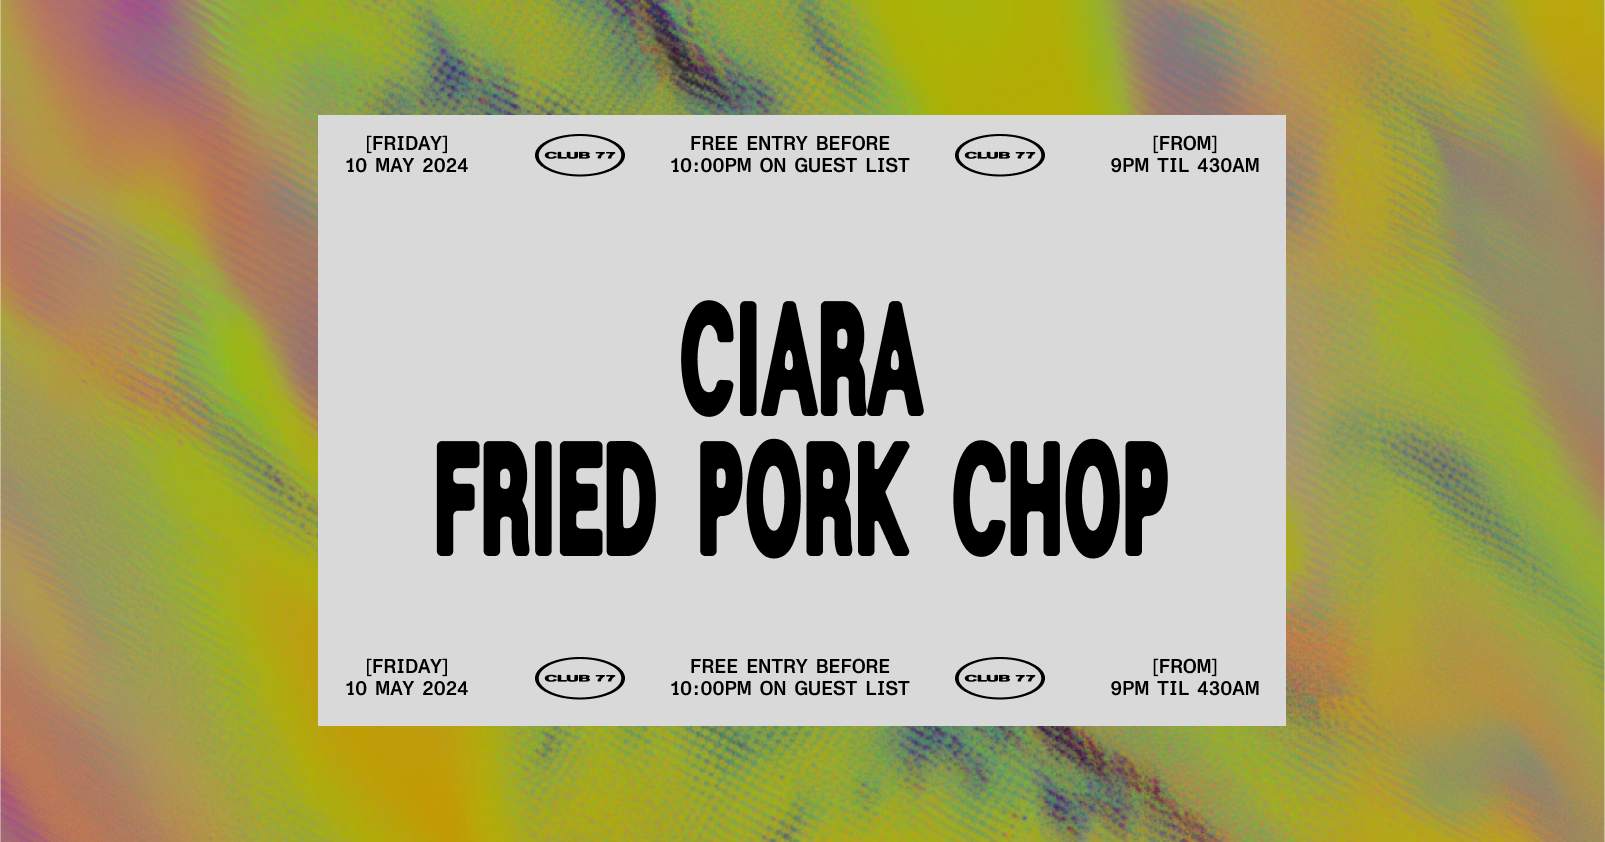 Fridays at 77: Ciara, Fried Pork Chop - Página frontal